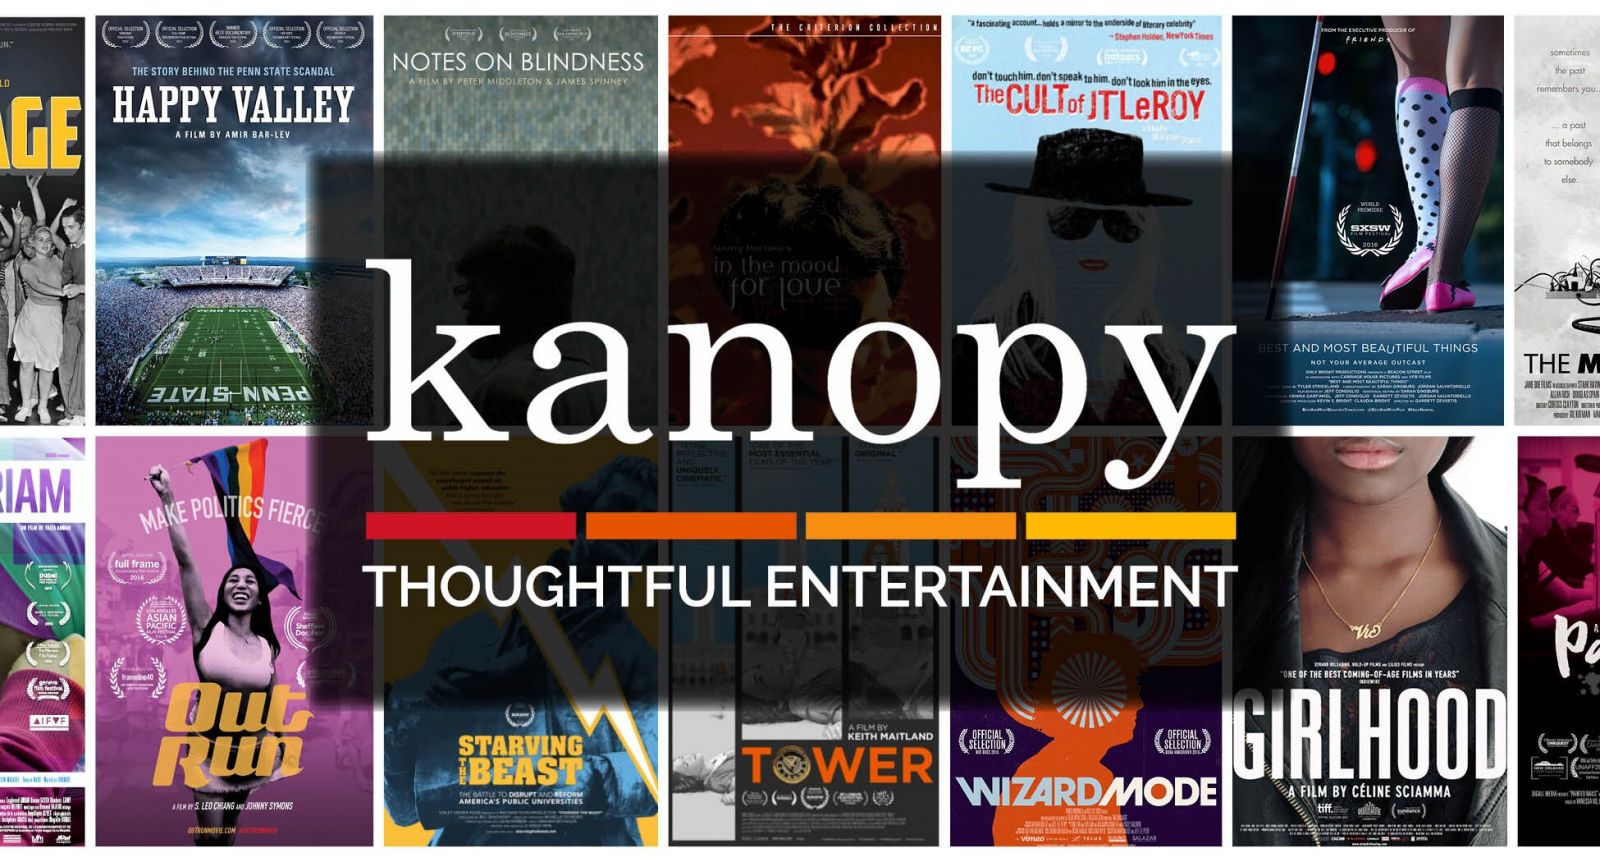 Sites like Kanopy